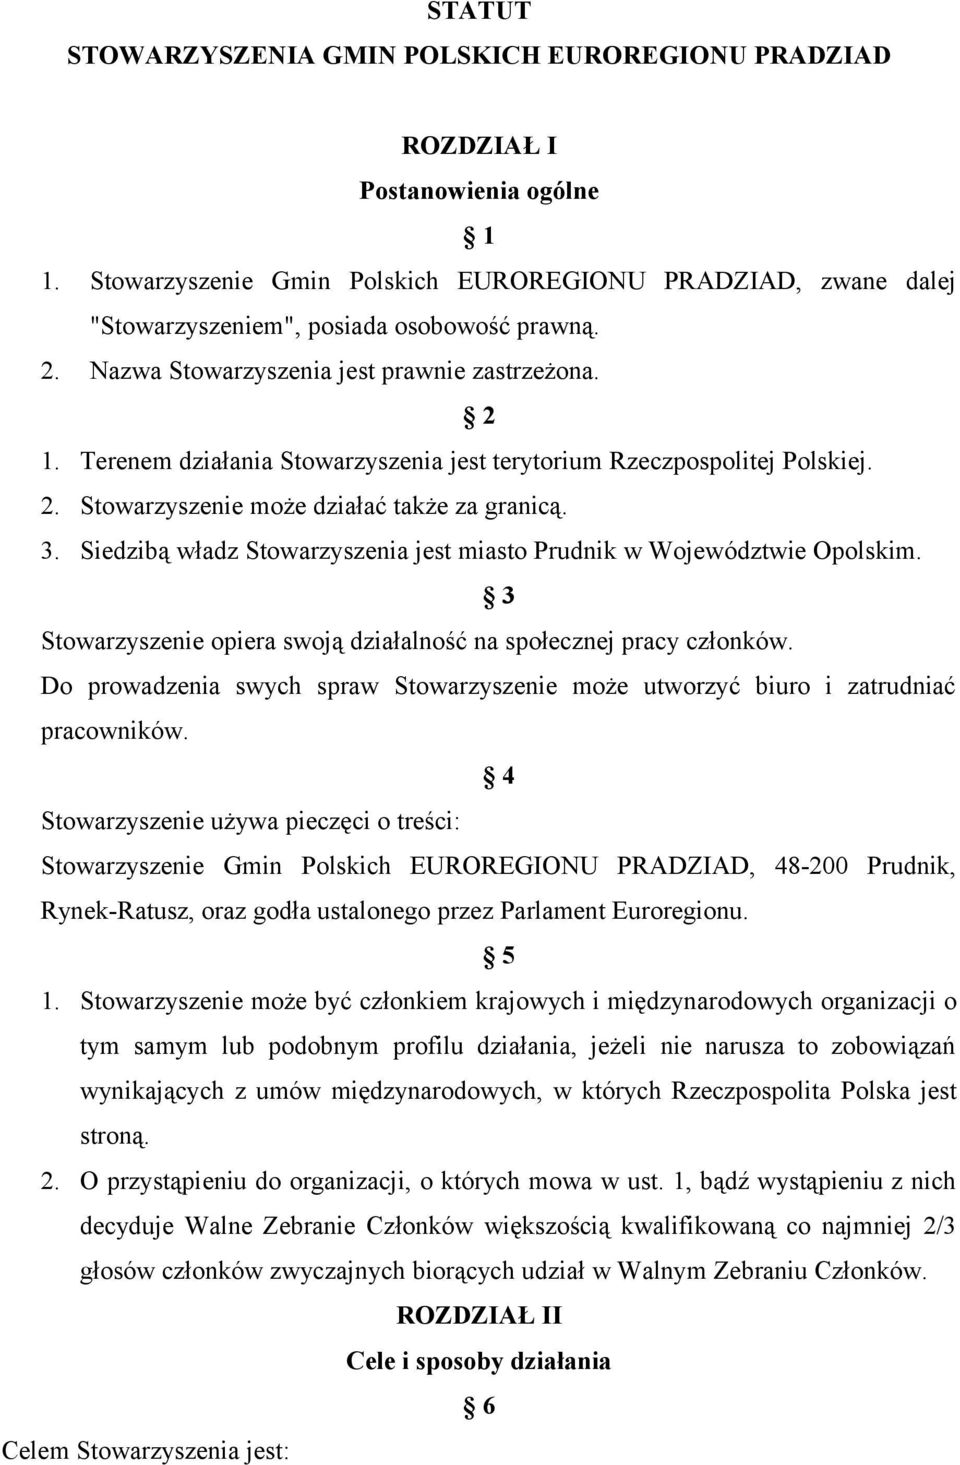 Terenem działania Stowarzyszenia jest terytorium Rzeczpospolitej Polskiej. 2. Stowarzyszenie może działać także za granicą. 3.